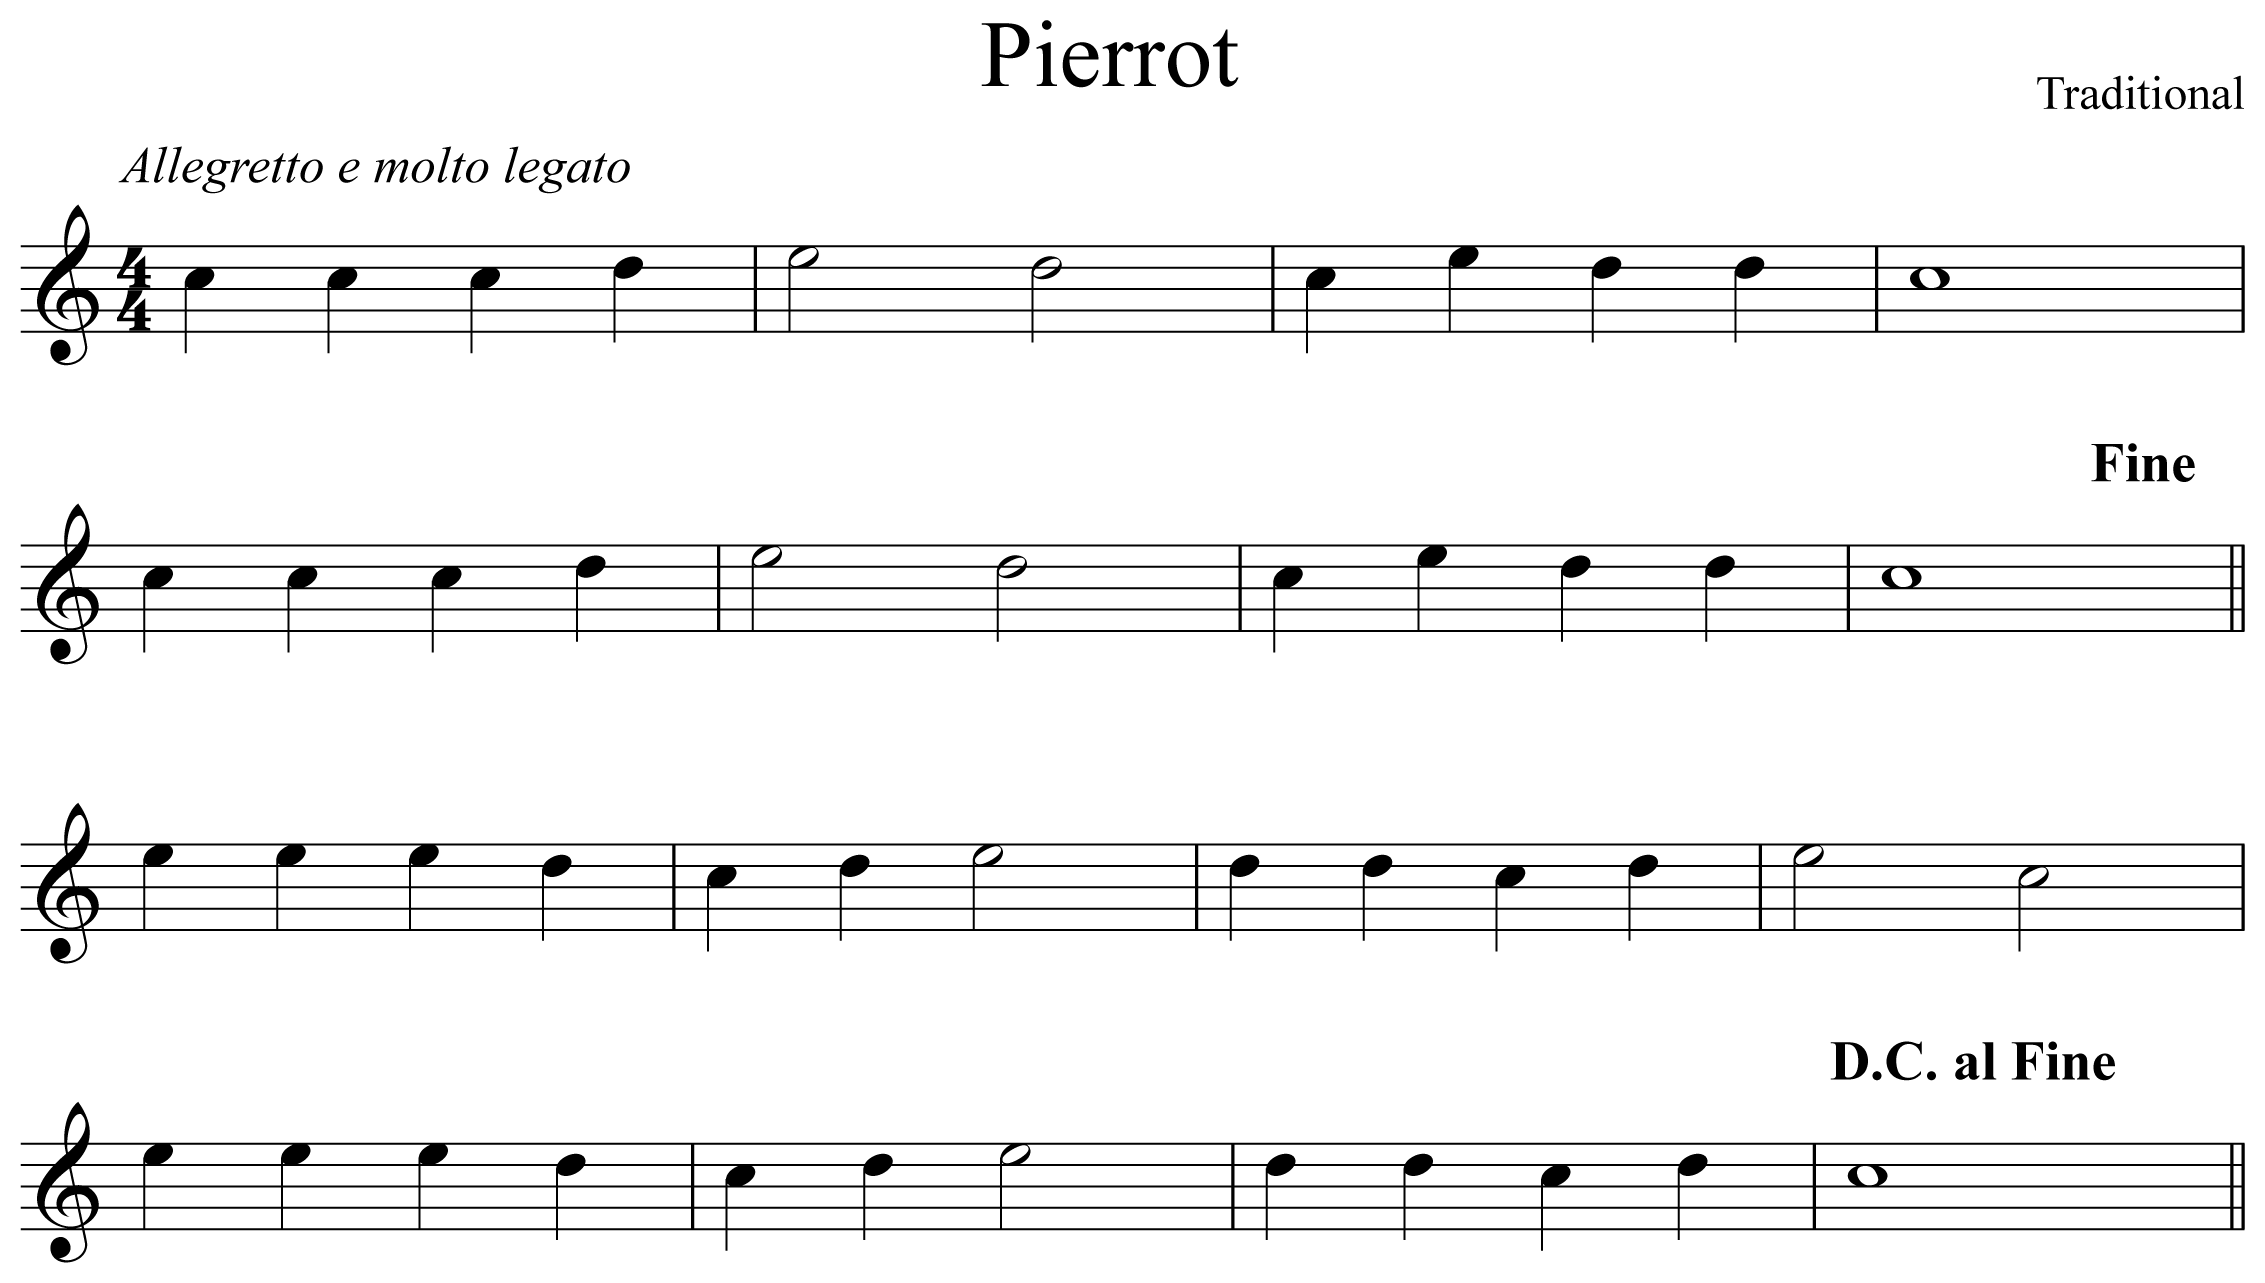 Pierrot Music Notation Saxophone